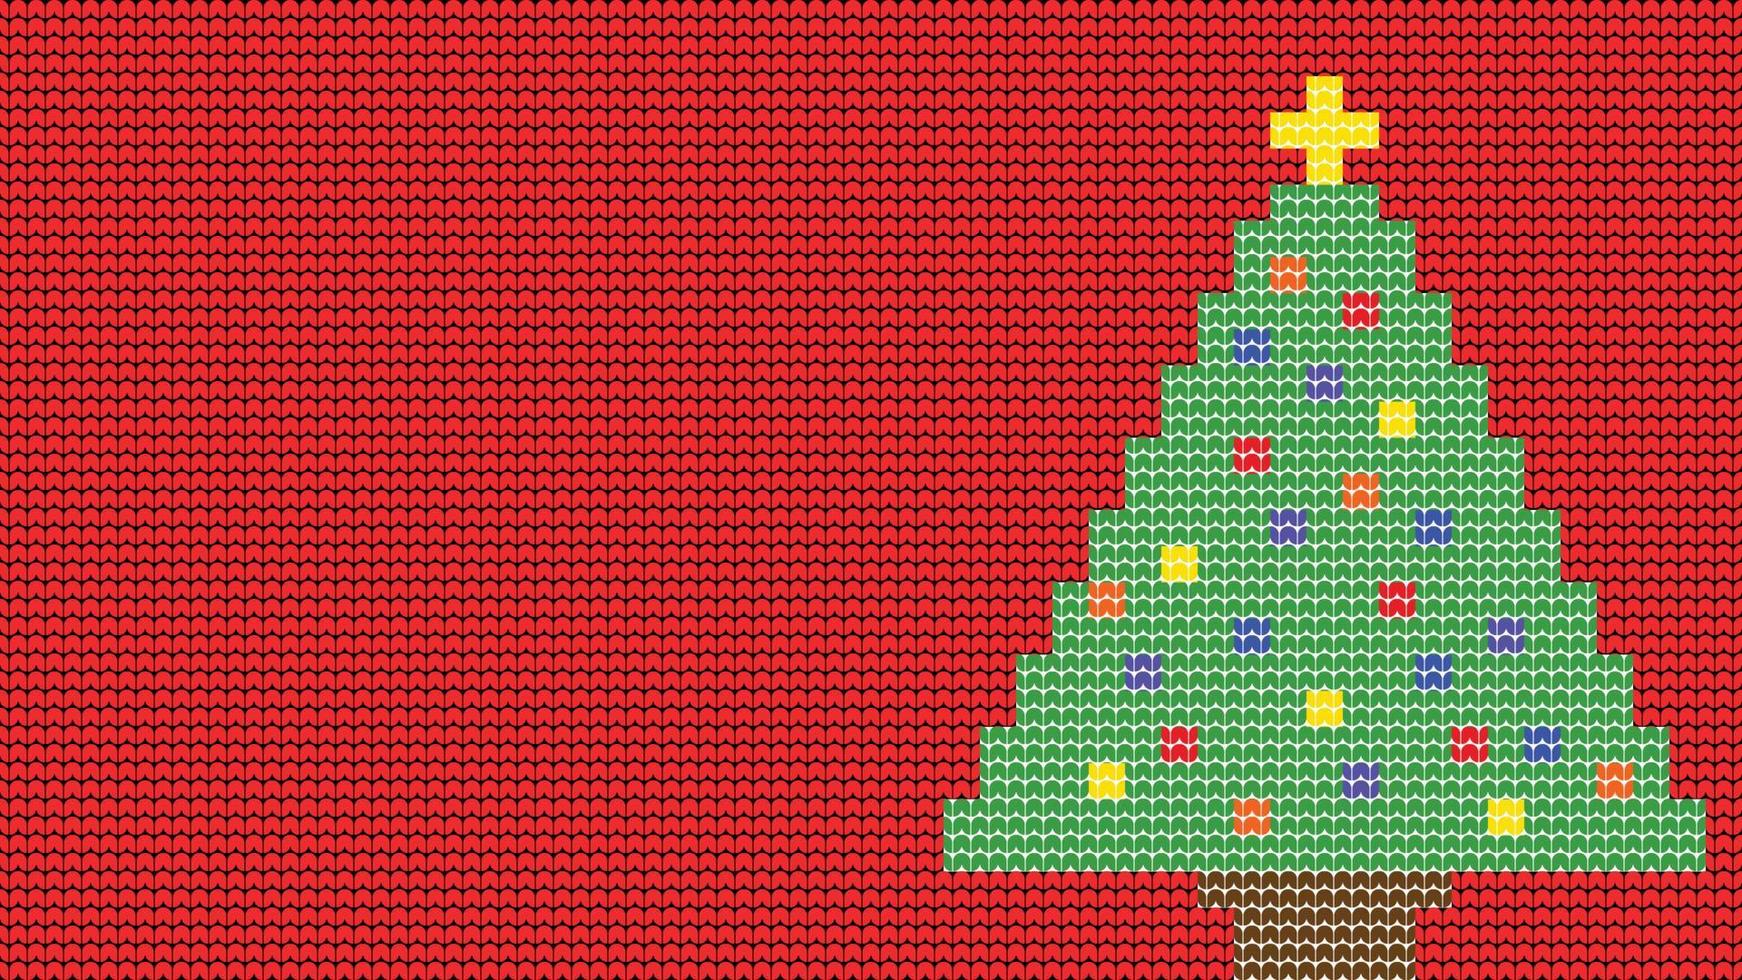 bordure de motif sans couture à tricoter sur fond rouge, bordure de motif ethnique d'arbre à tricoter joyeux noël et affiche vectorielle de joyeux jours d'hiver vecteur